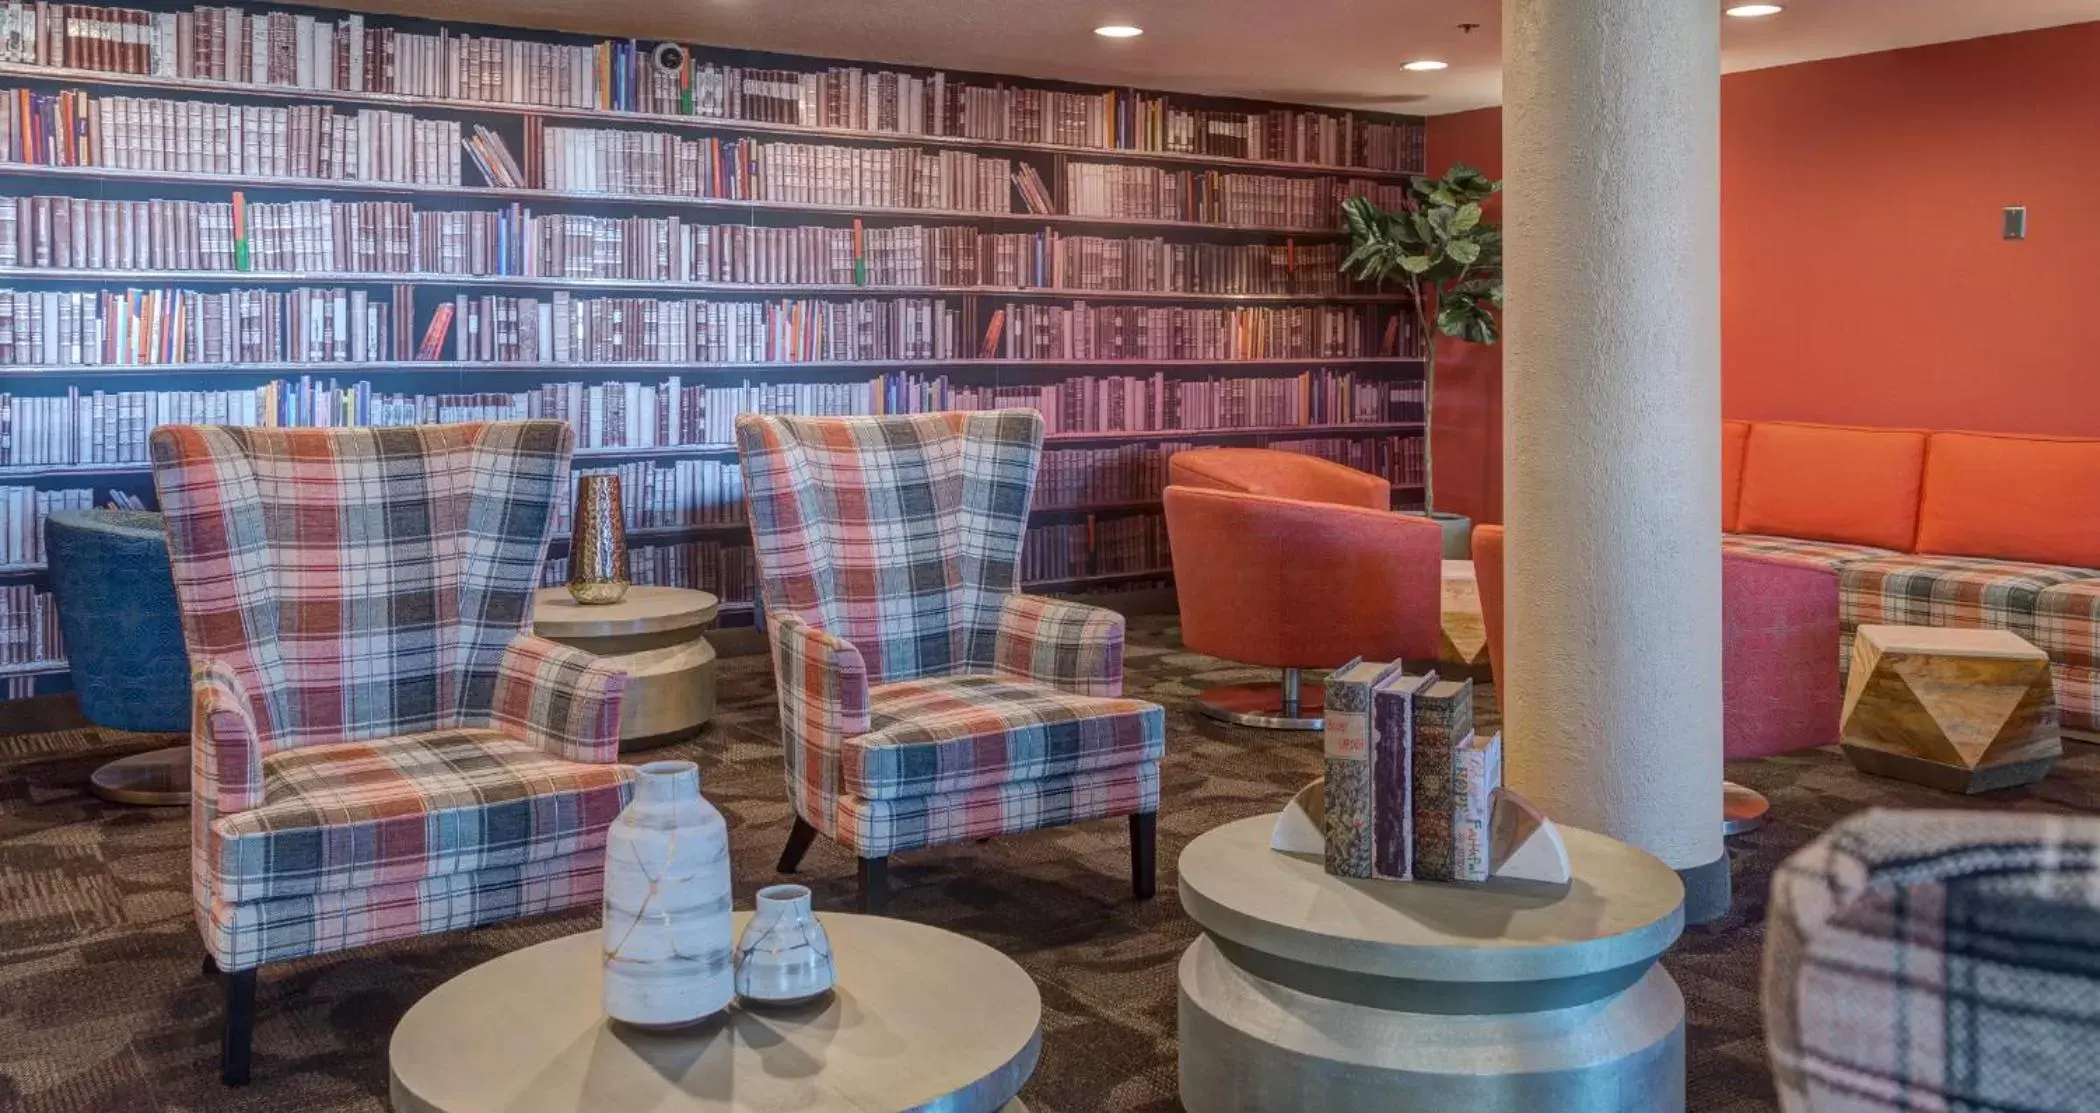 Lobby or reception, Library in LivINN Hotel Cincinnati North/ Sharonville